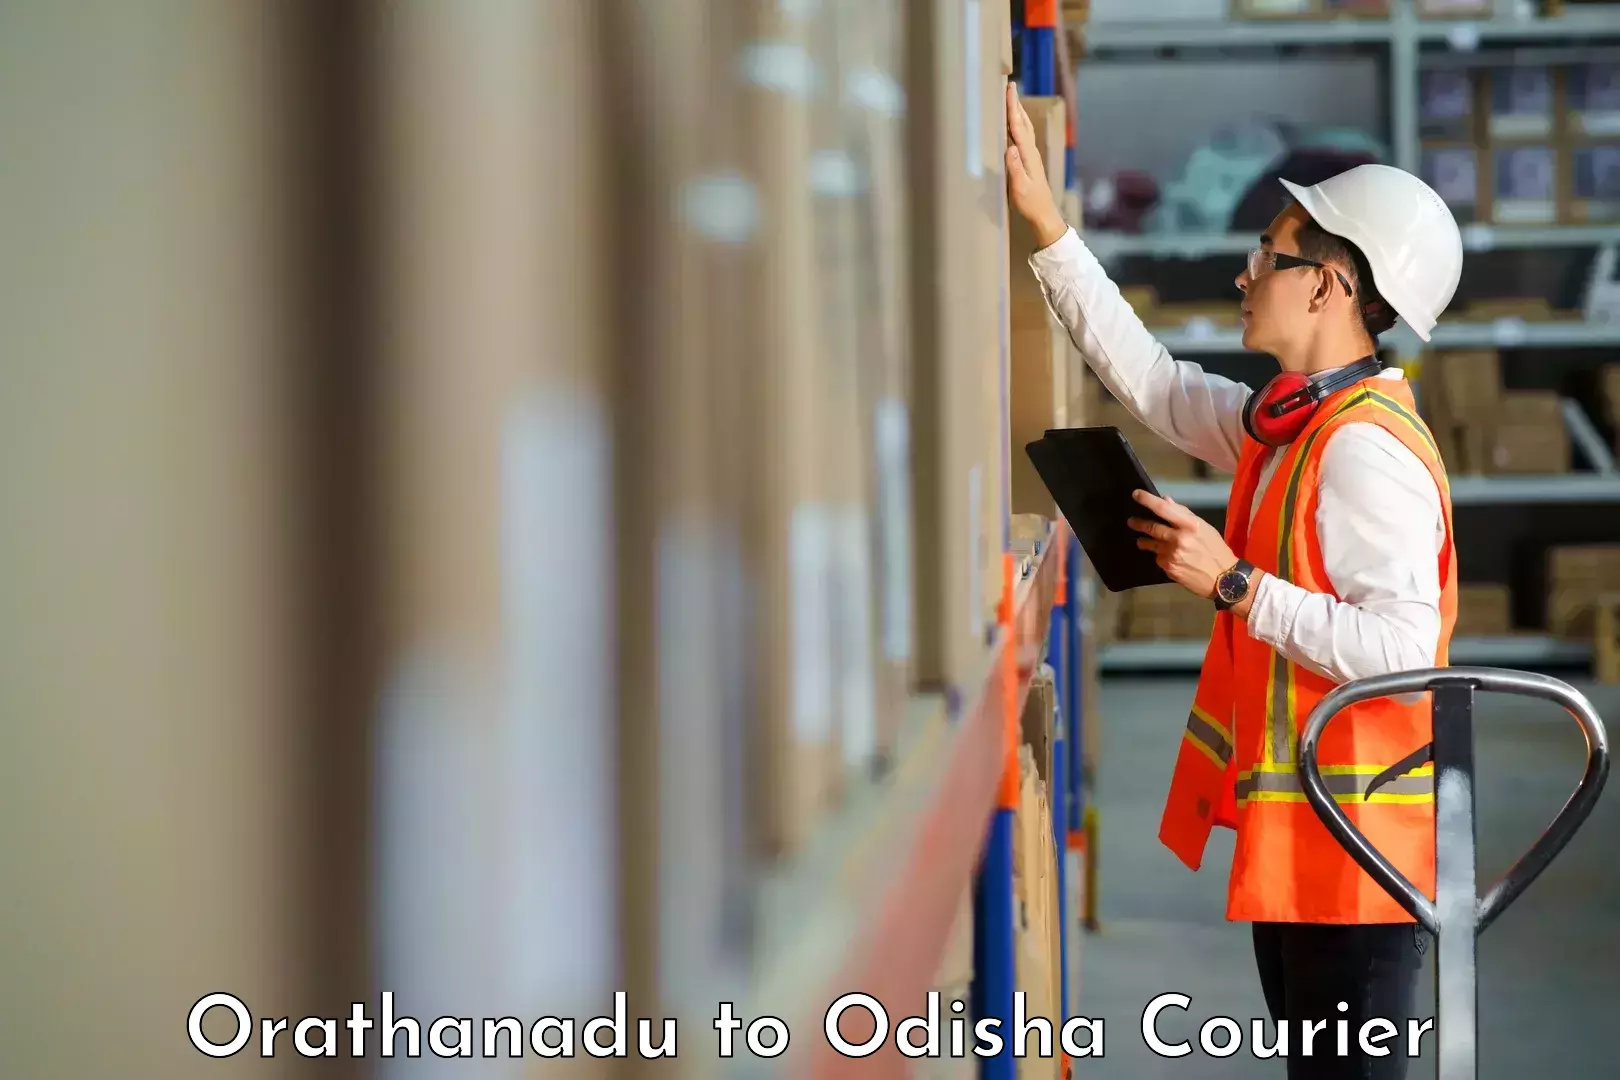 Nationwide courier service Orathanadu to Sundargarh